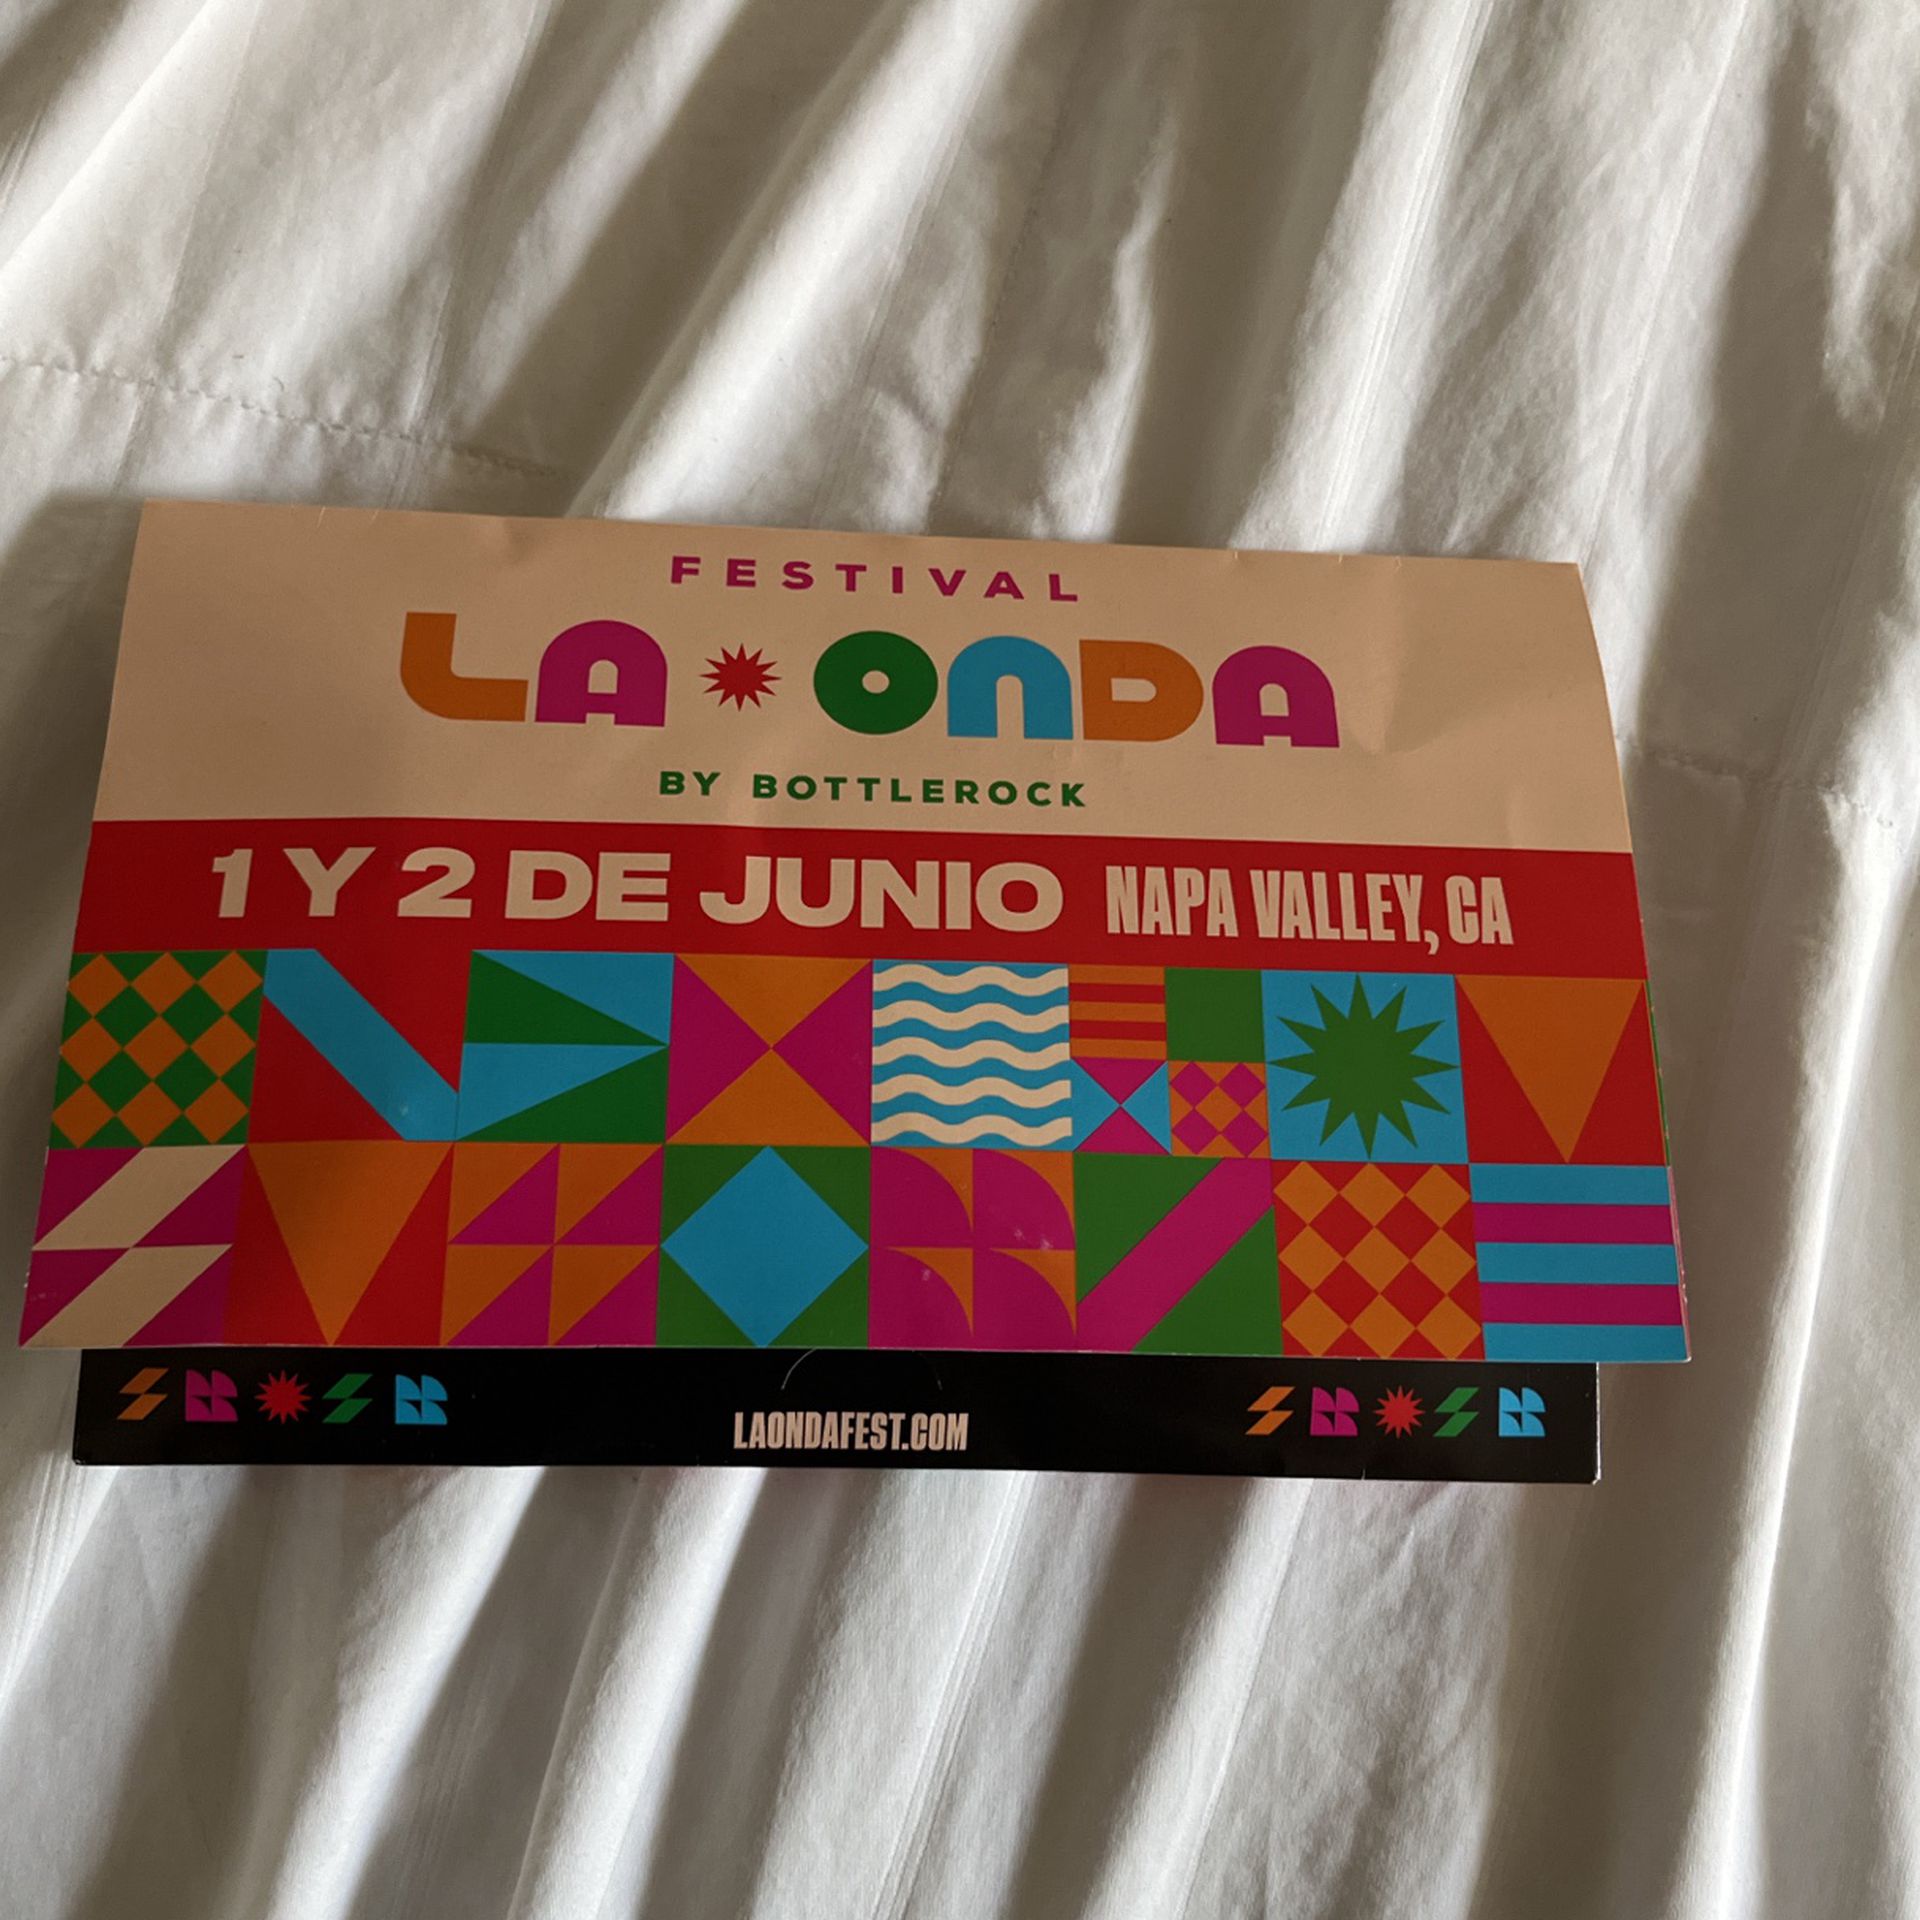 VIP passes for La Onda Festival